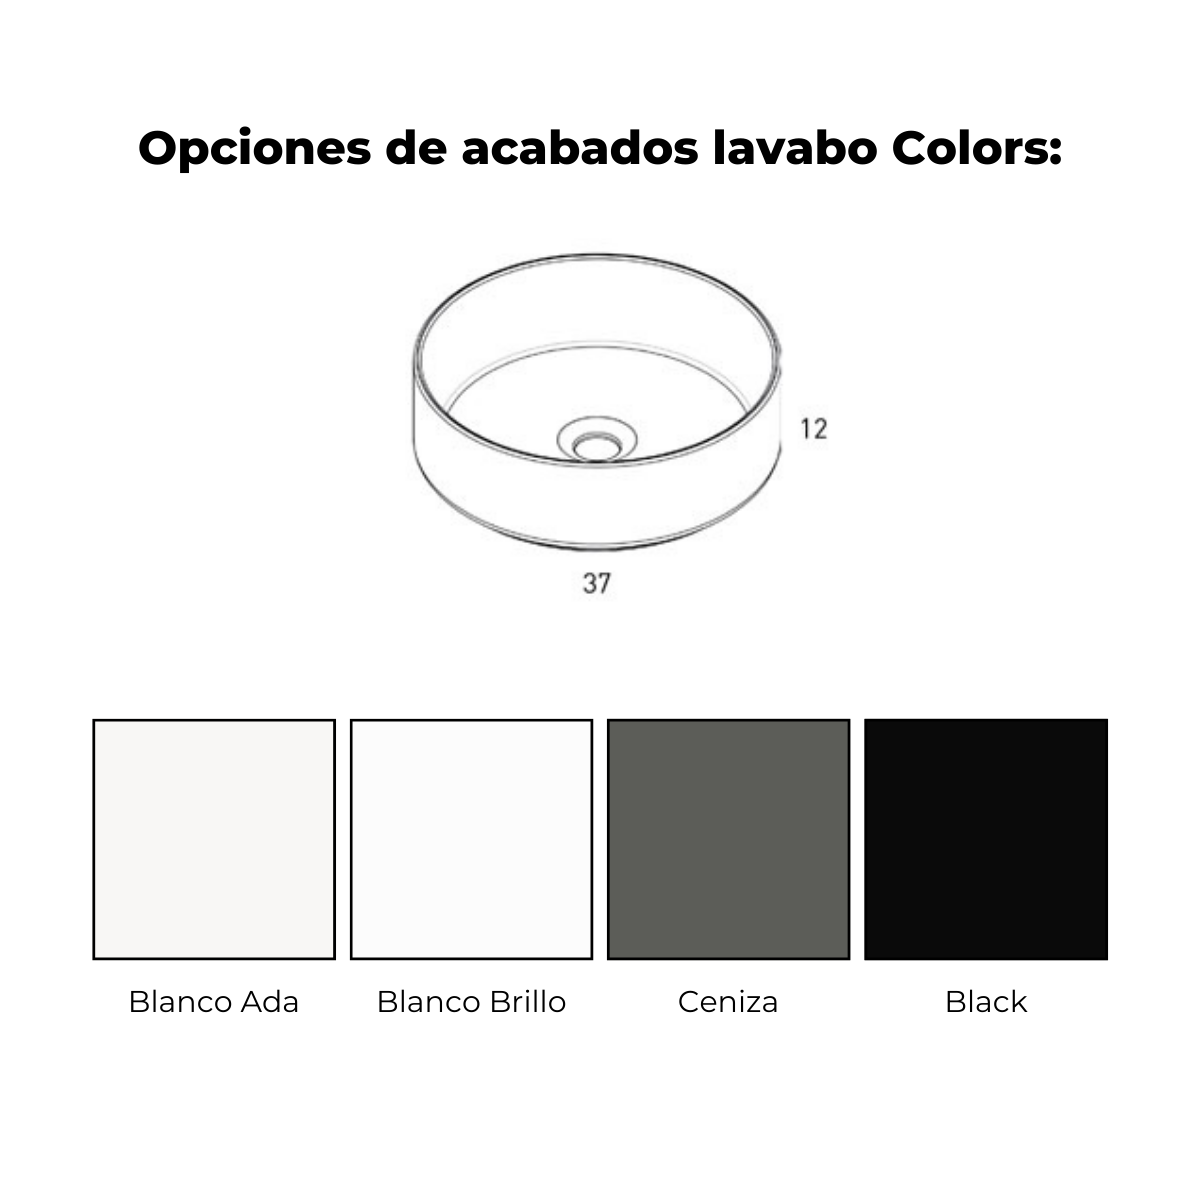 lavabo colors 2c arco black